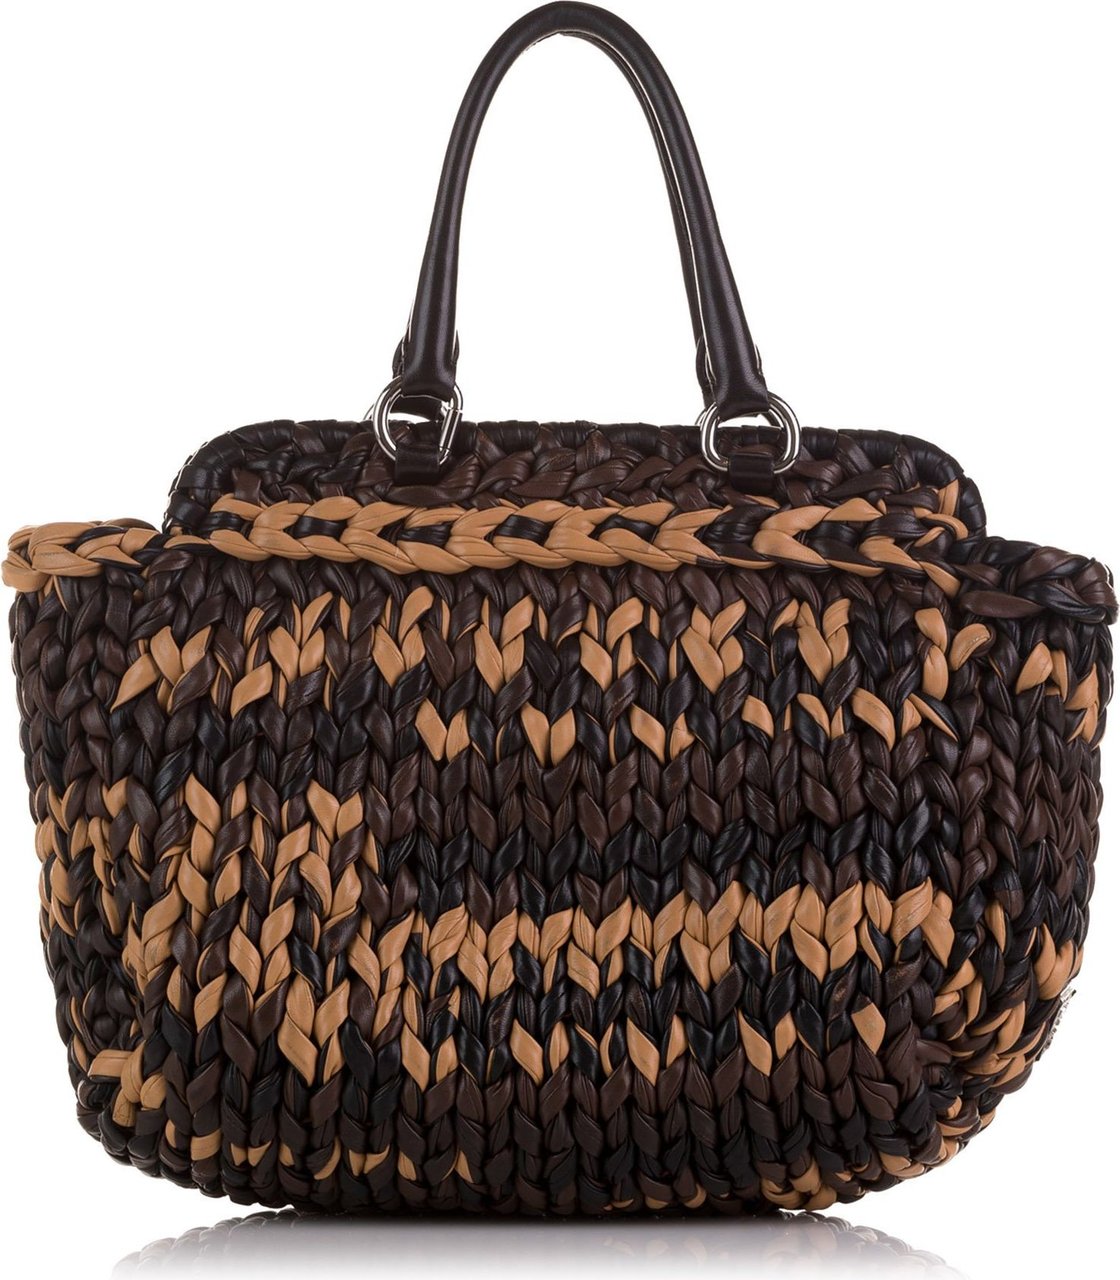 Prada Knit Nappa Tote Bag Bruin